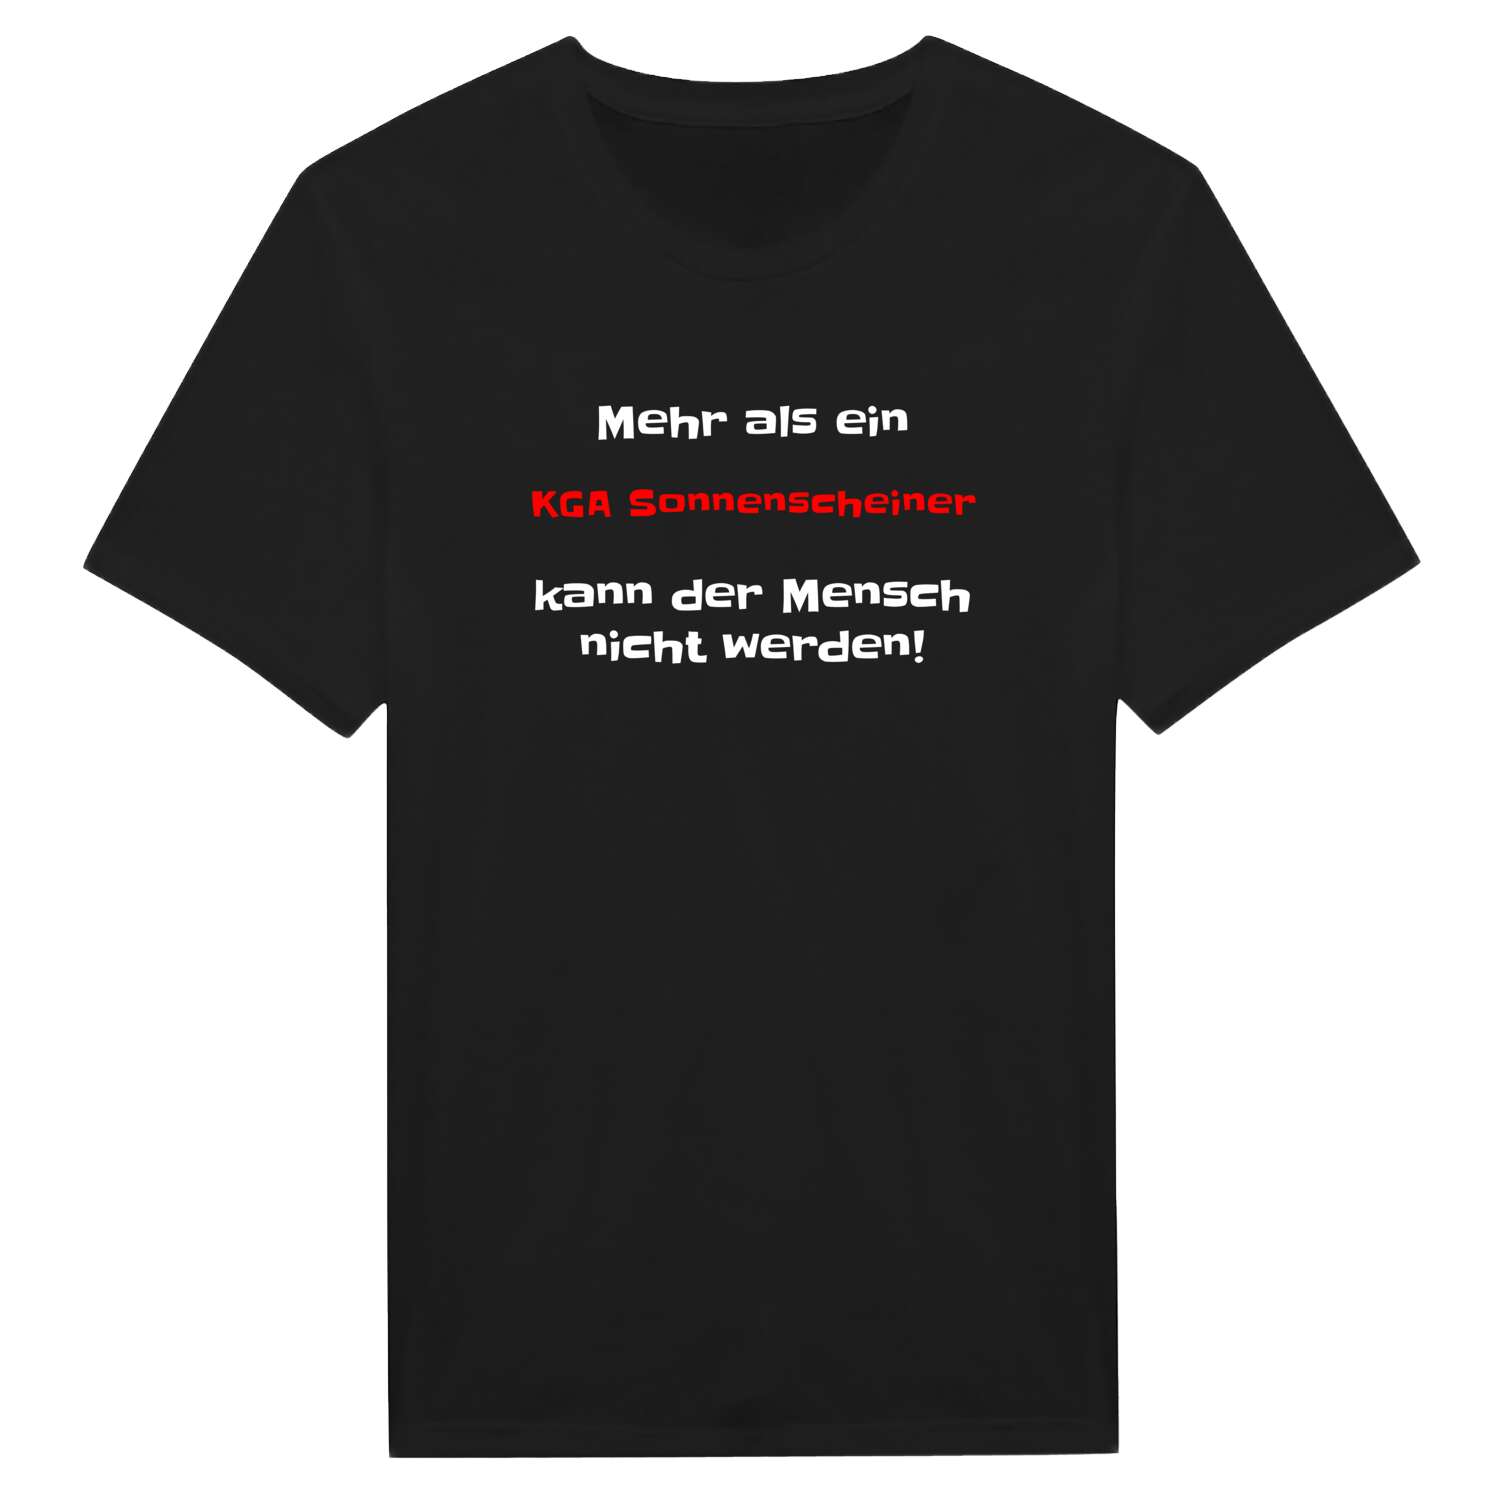 KGA Sonnenschein T-Shirt »Mehr als ein«